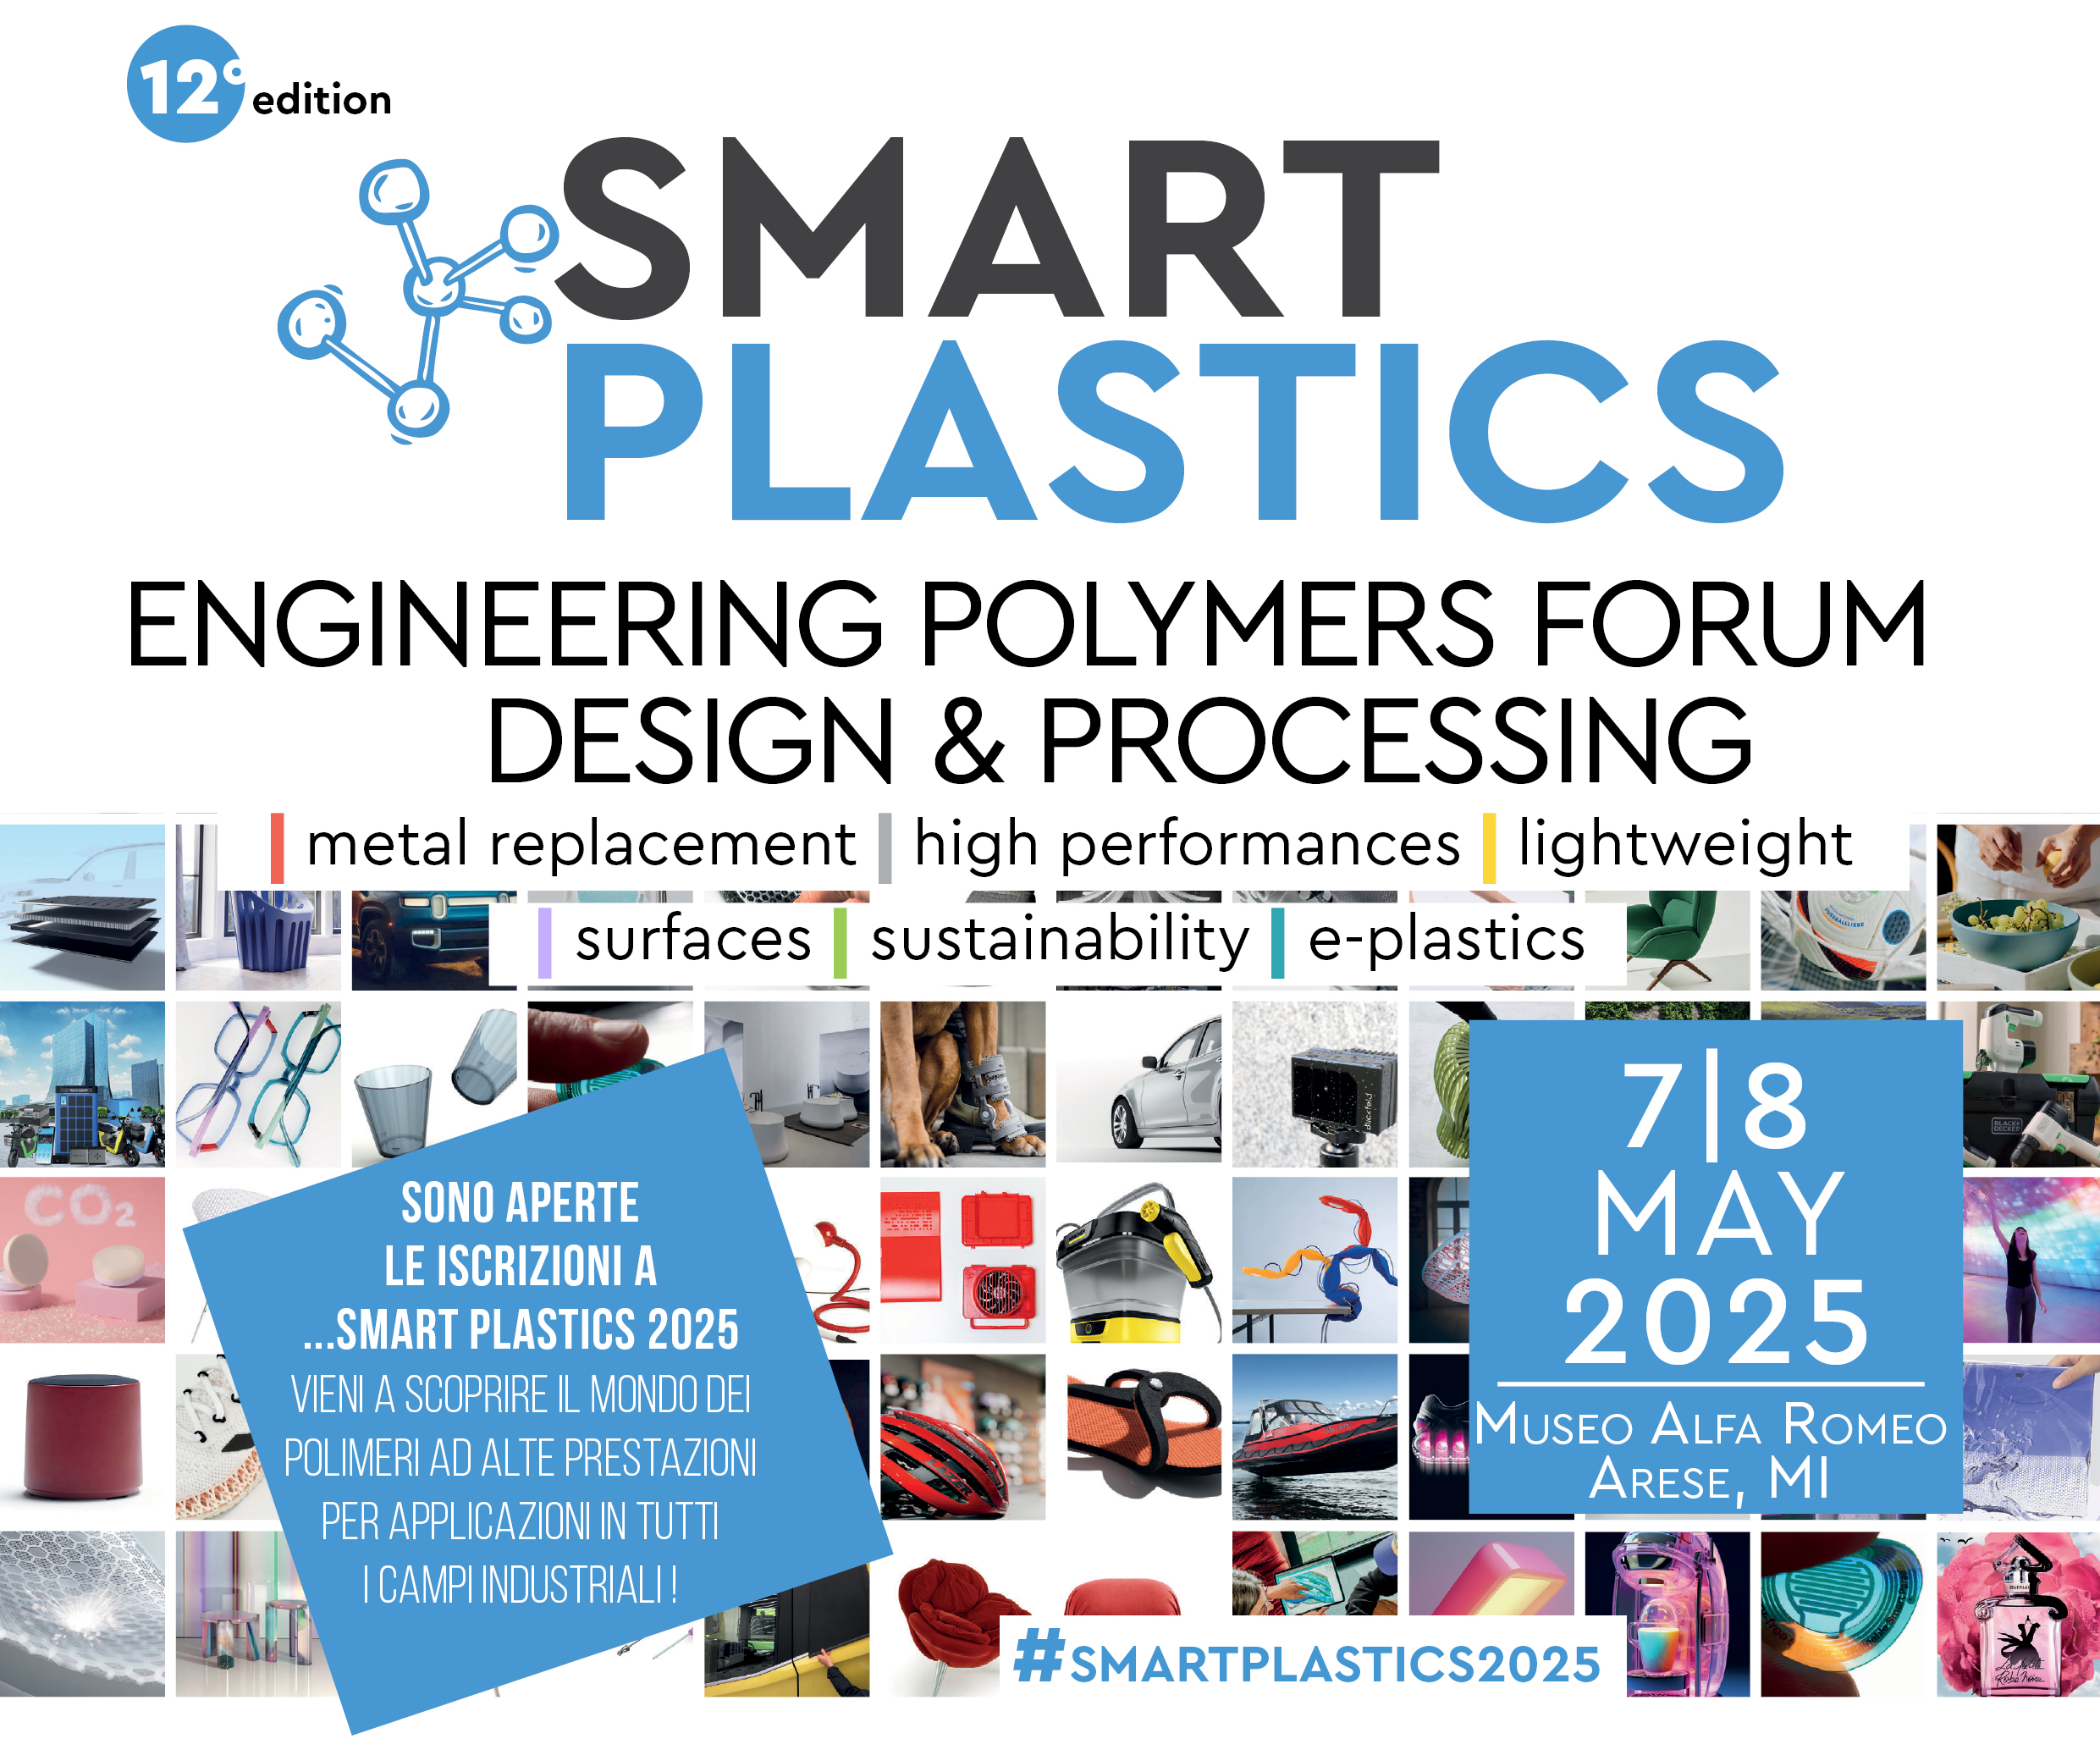 Aperte le Sponsorizzazioni per il Convegno Smart Plastics 2025!